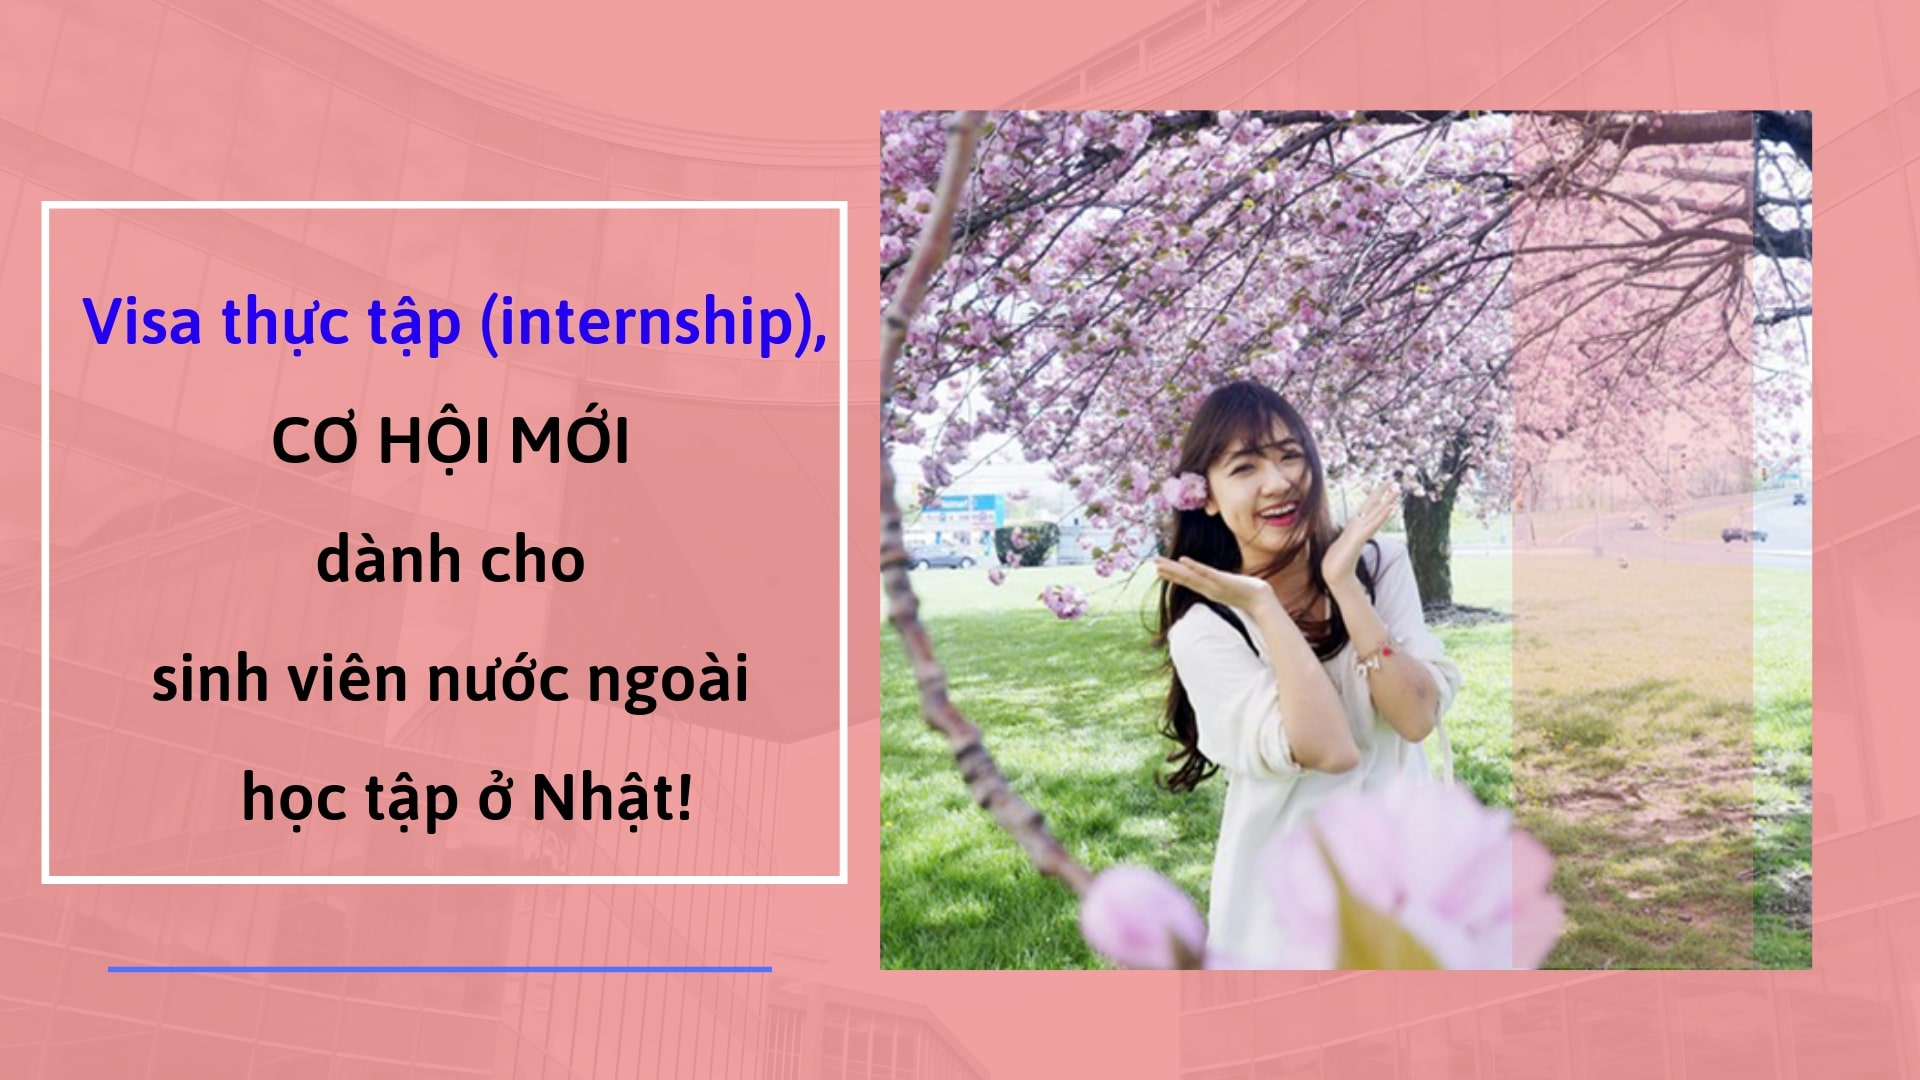 Visa thực tập(internship) – CƠ HỘI MỚI dành cho sinh viên nước ngoài được học tập ở Nhật!